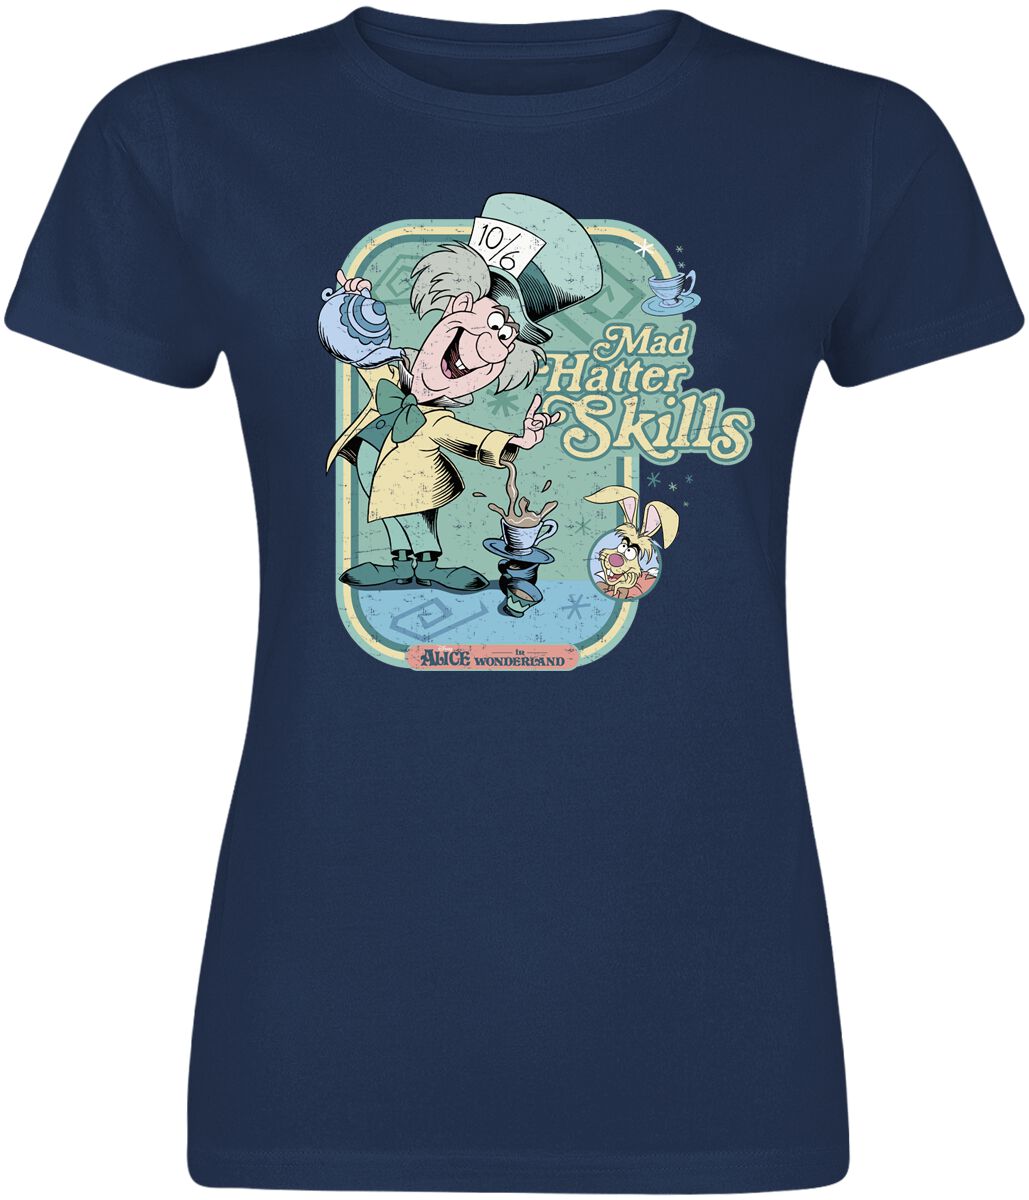 Alice im Wunderland - Disney T-Shirt - Mad hatter Skills - S bis XXL - für Damen - Größe XXL - navy  - EMP exklusives Merchandise!